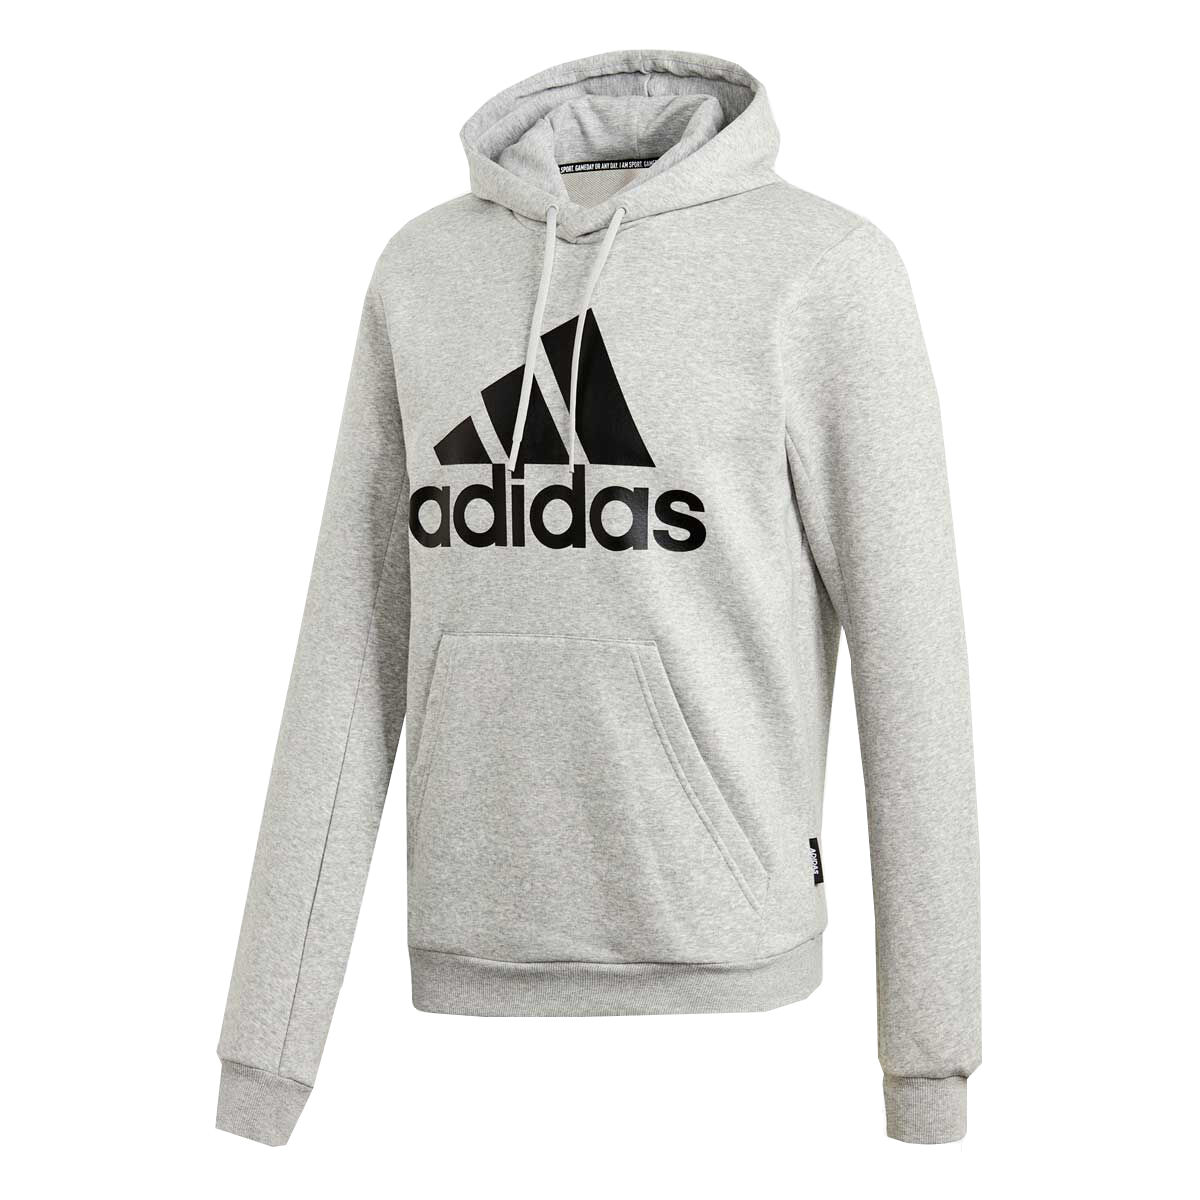 adidas hoodies on sale mens